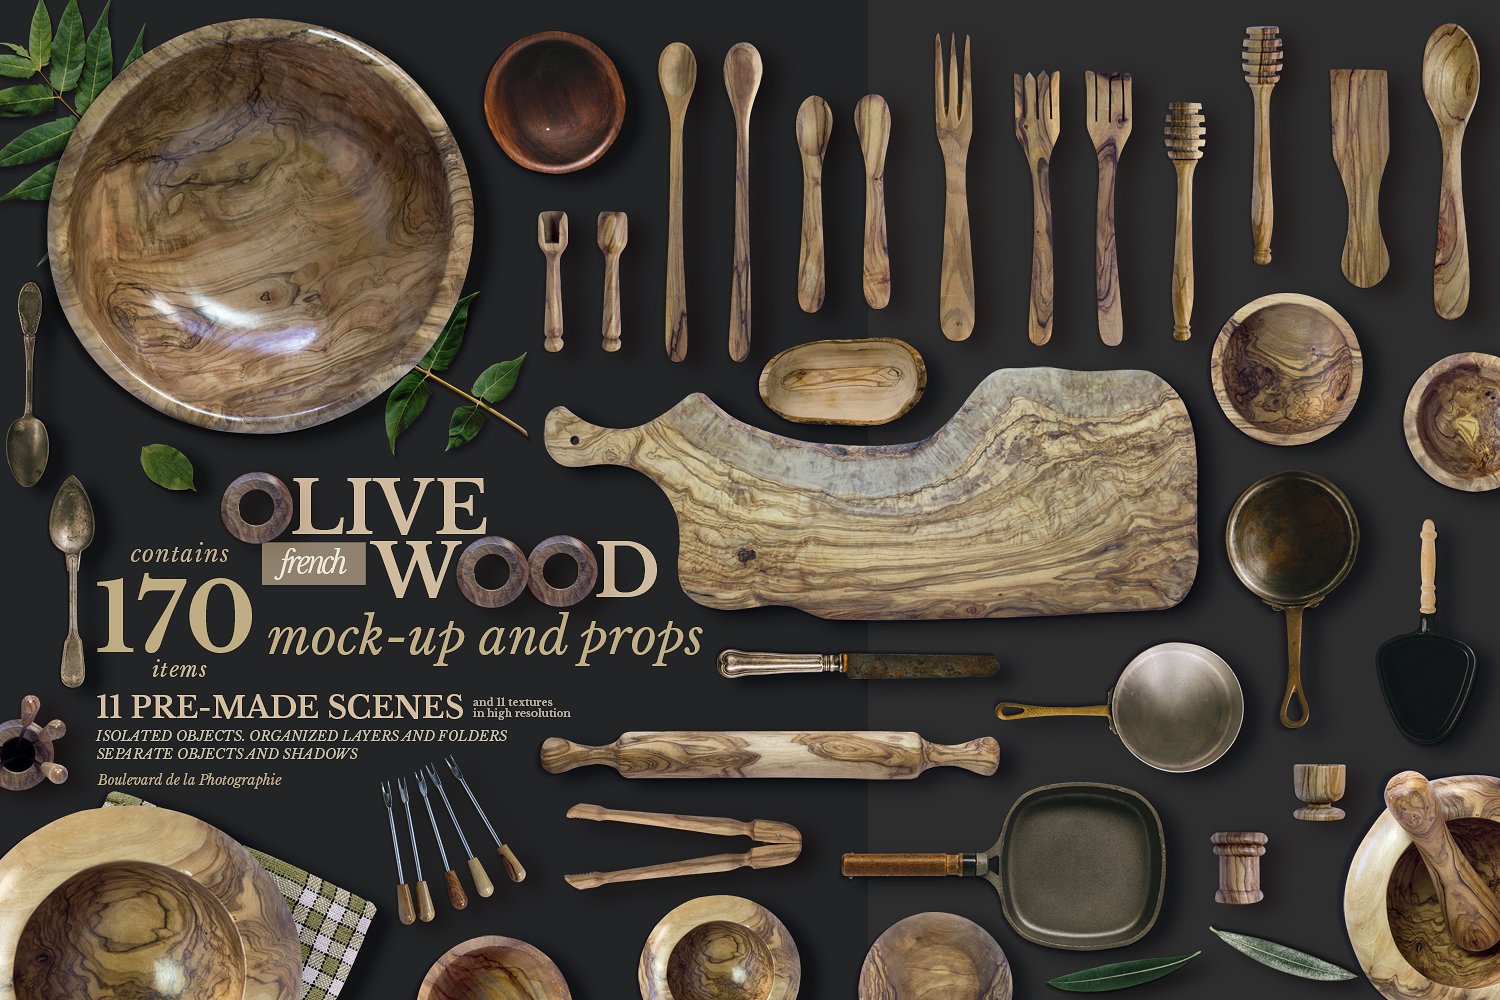 高端法国橄榄木厨房用品展示模型mockups下载 3.29 GB[PSD]插图